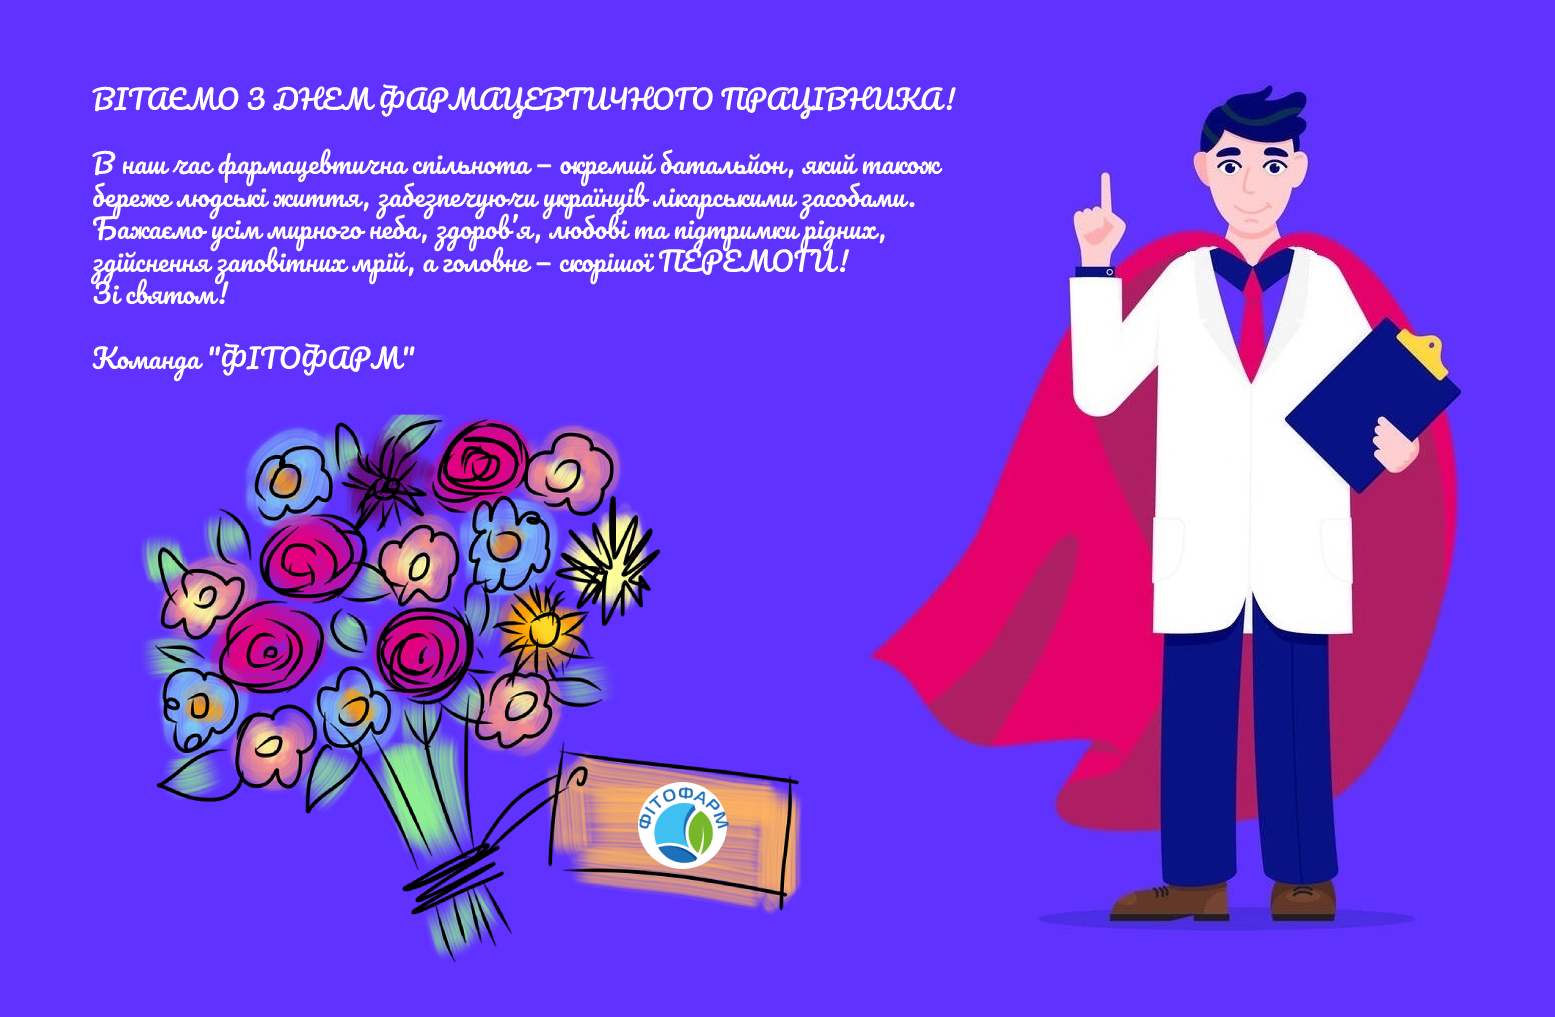 Вітаємо з Днем фармацевта України!